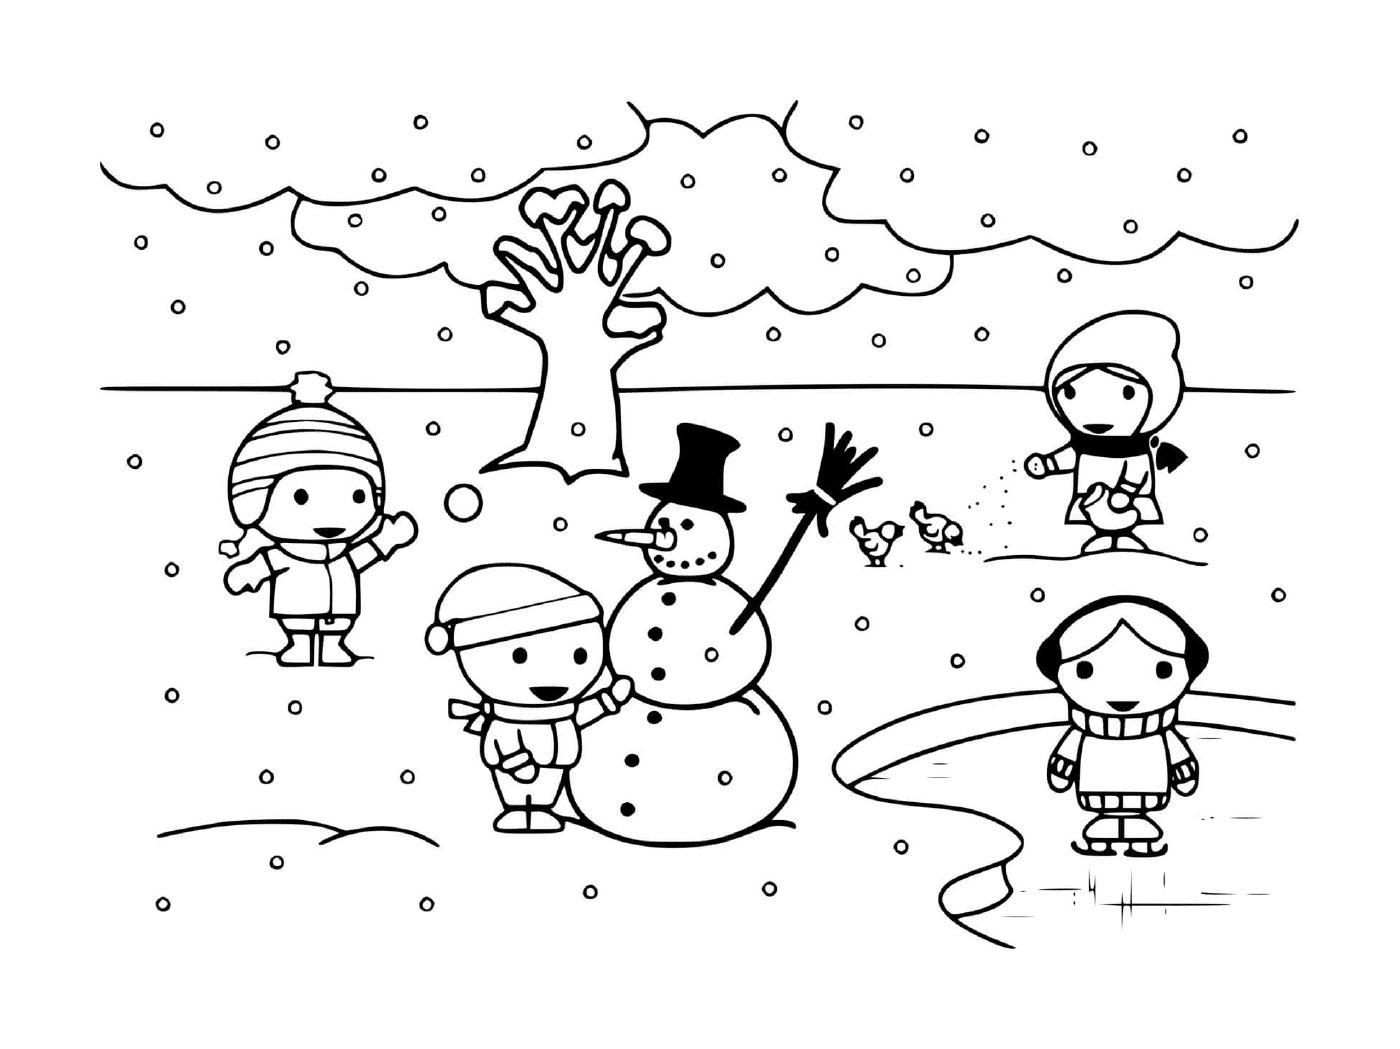   Enfants jouent avec la neige en hiver 